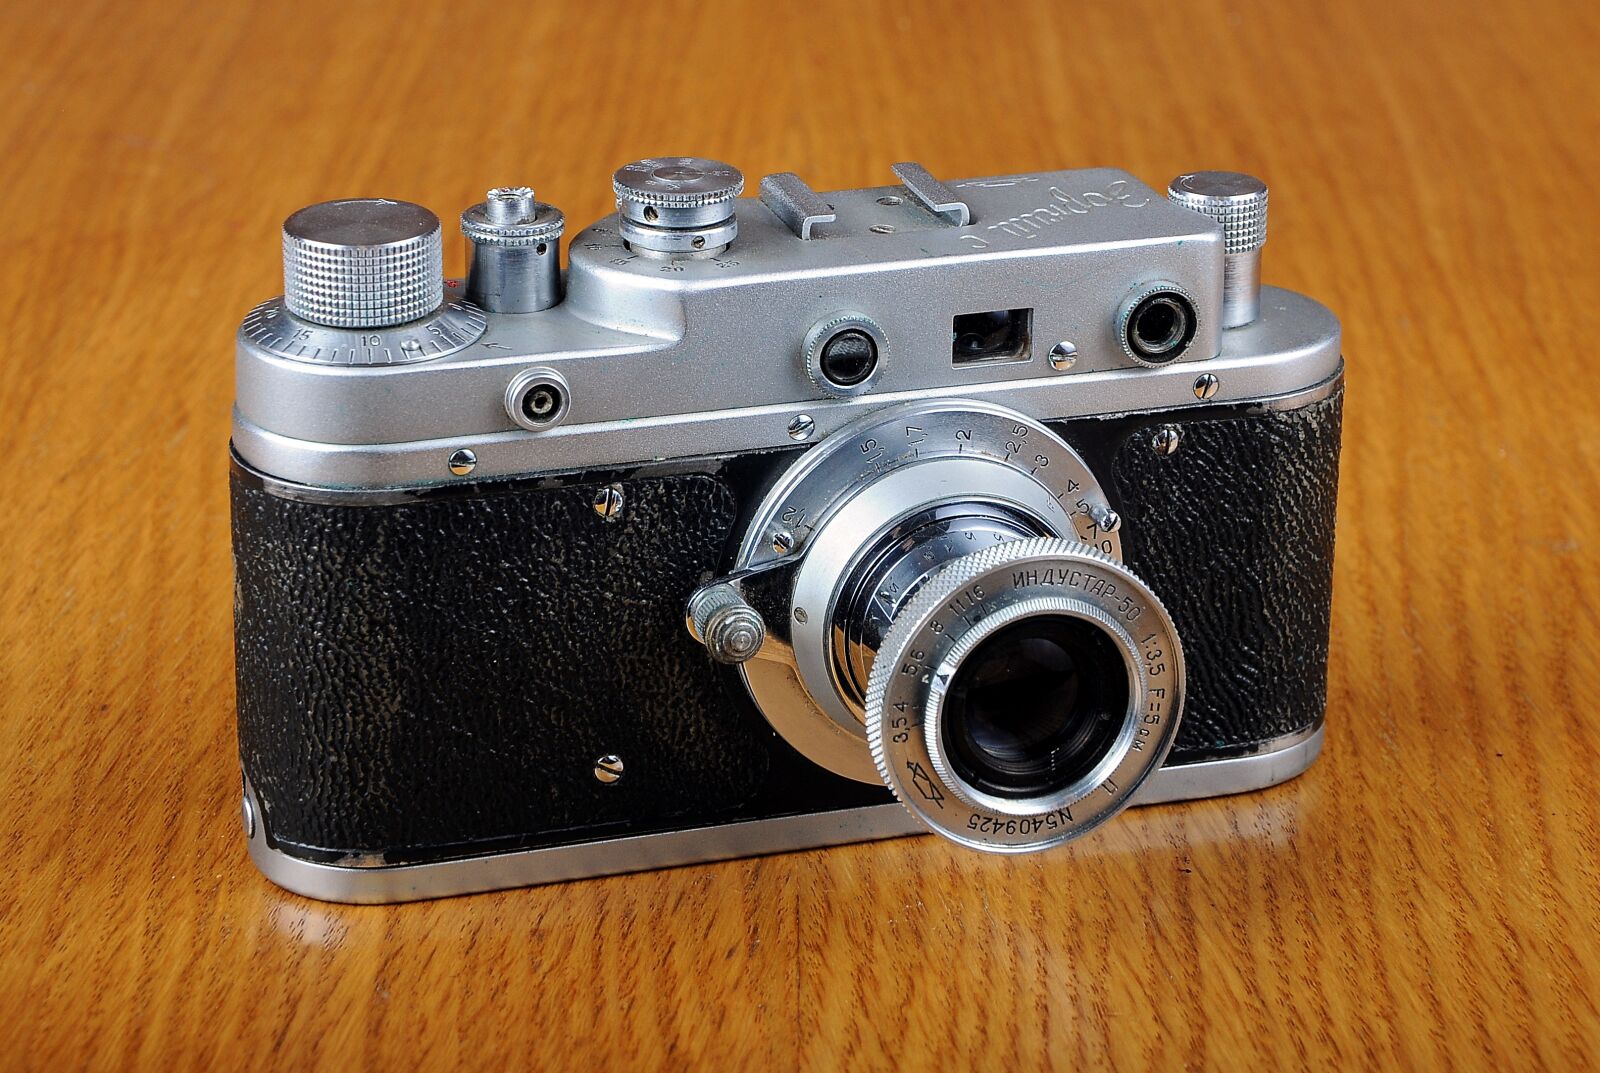 Nikon D90 sample photo. Camera, old camera, dawn photography